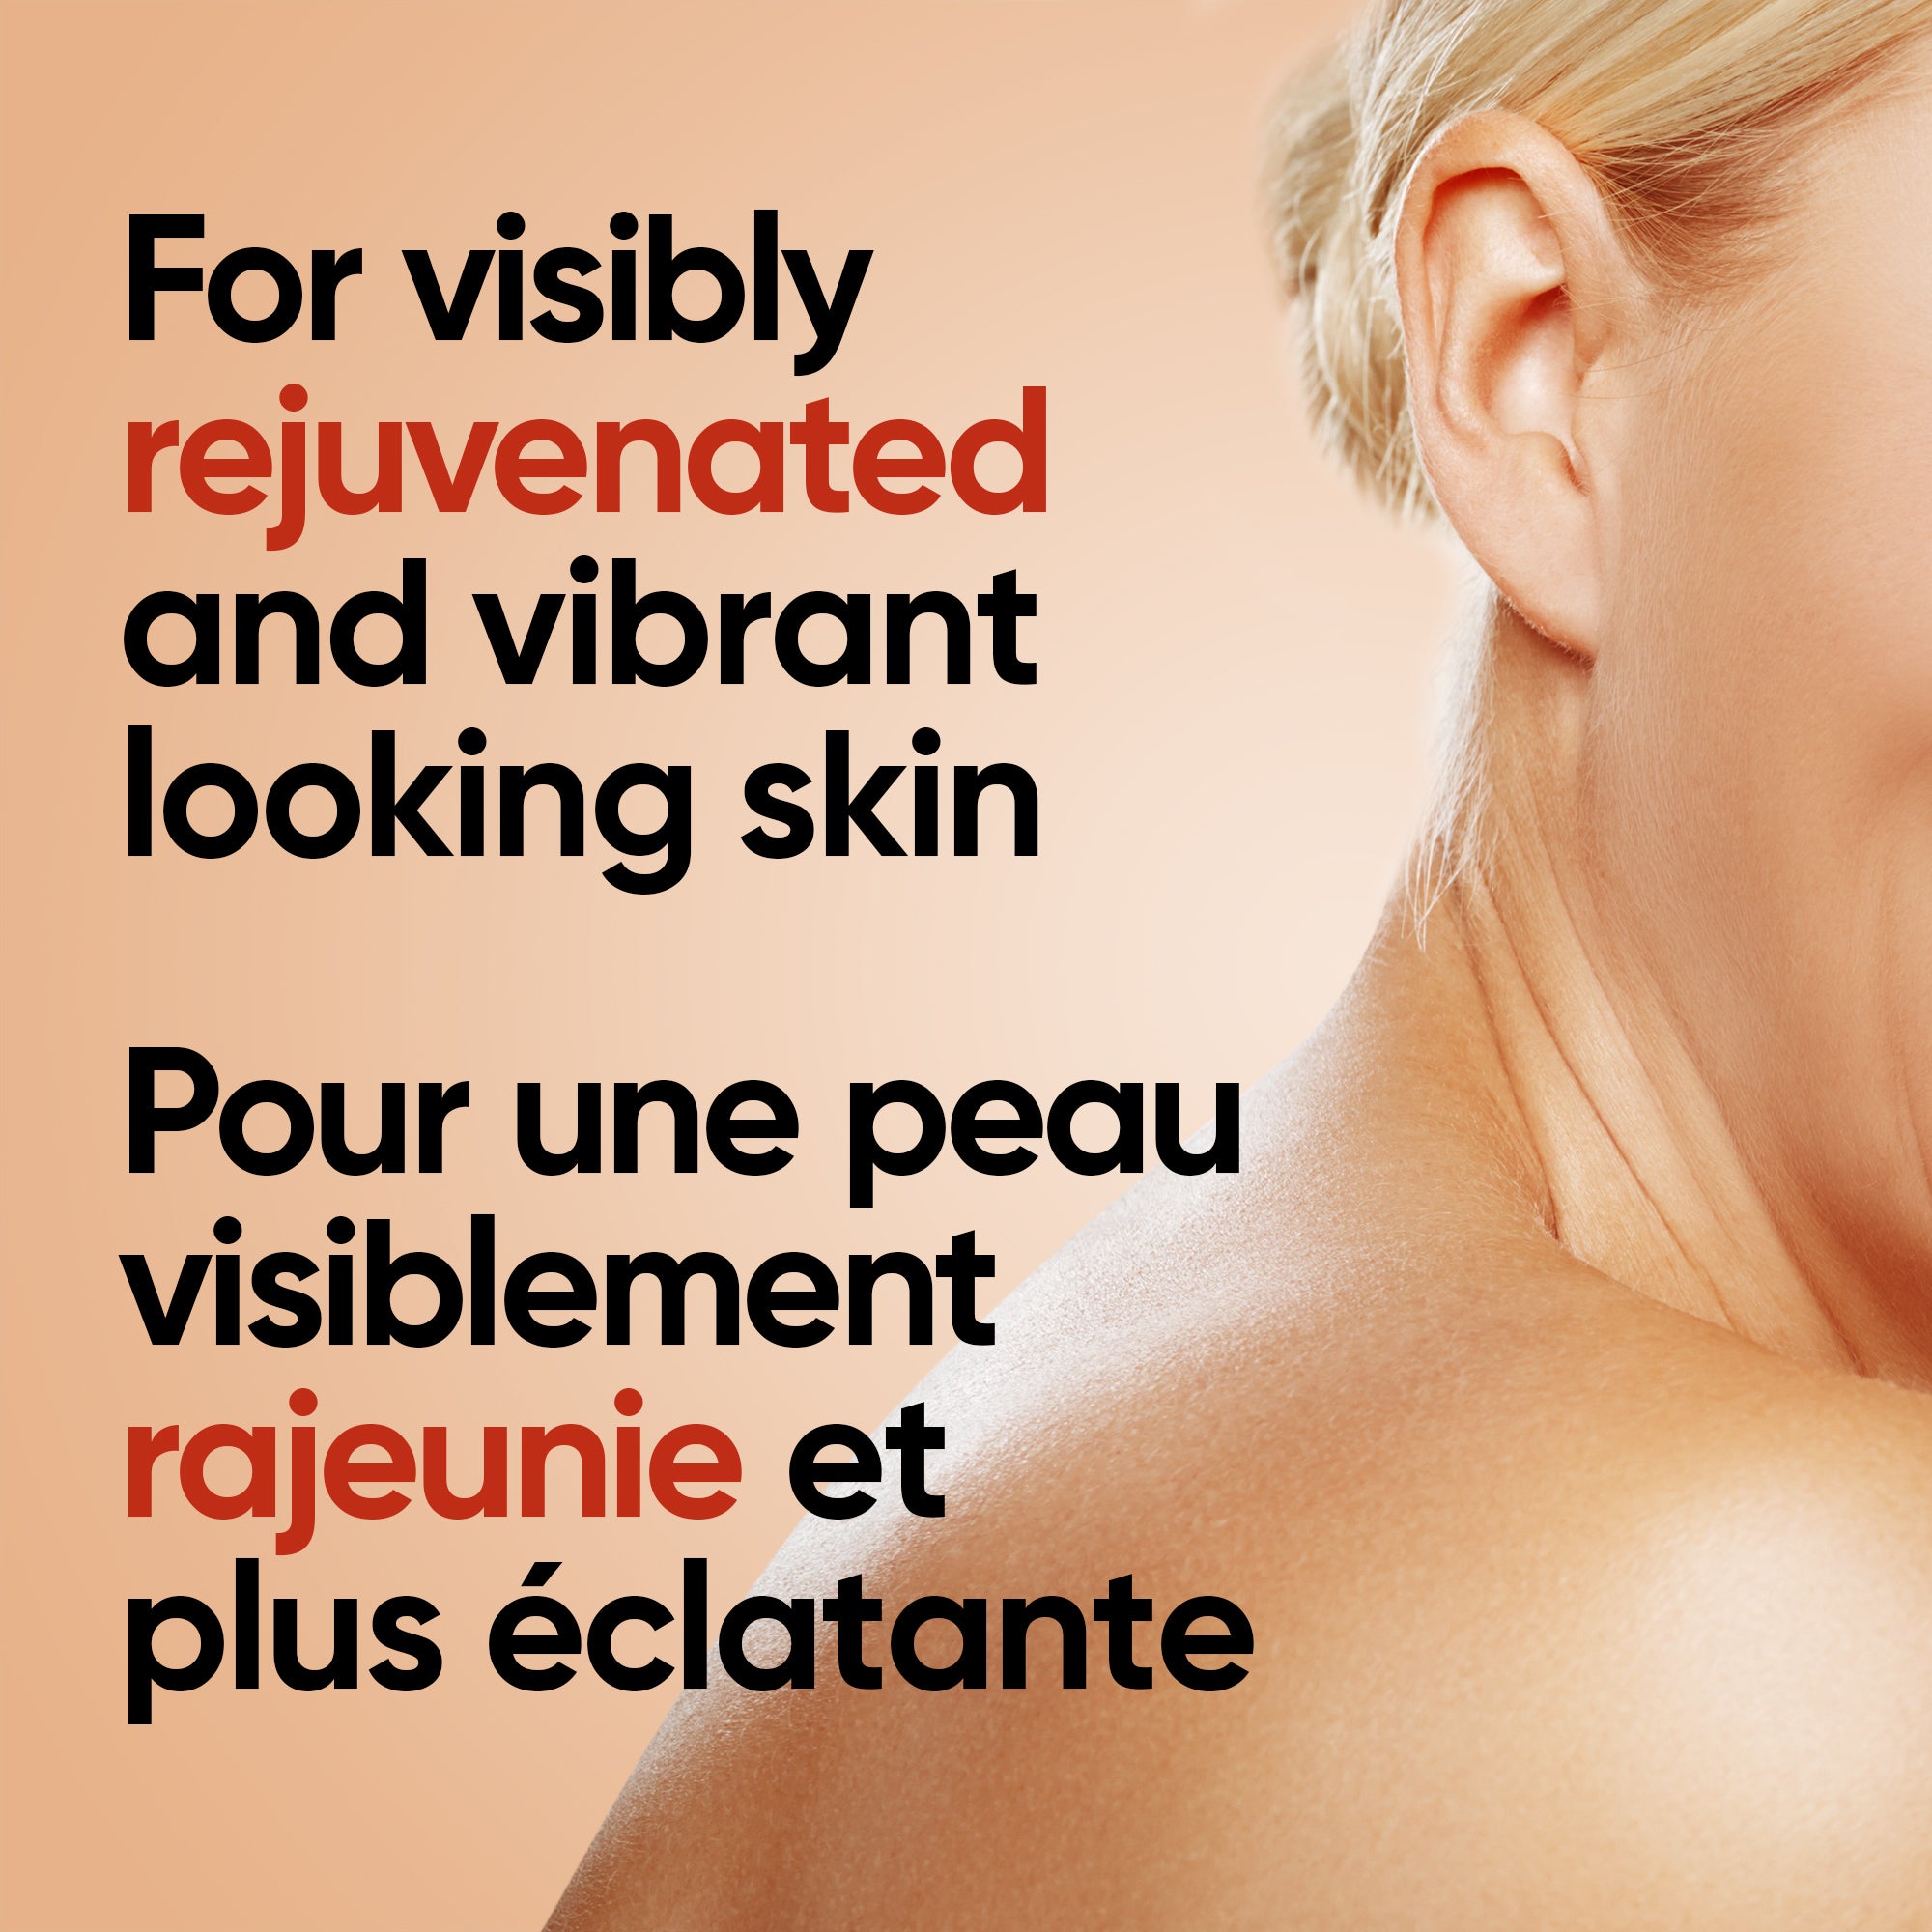 English: For visibly rejuvenated and vibrant looking skin. Français: Pour une peau visiblement rajeunie et plus radieuse.